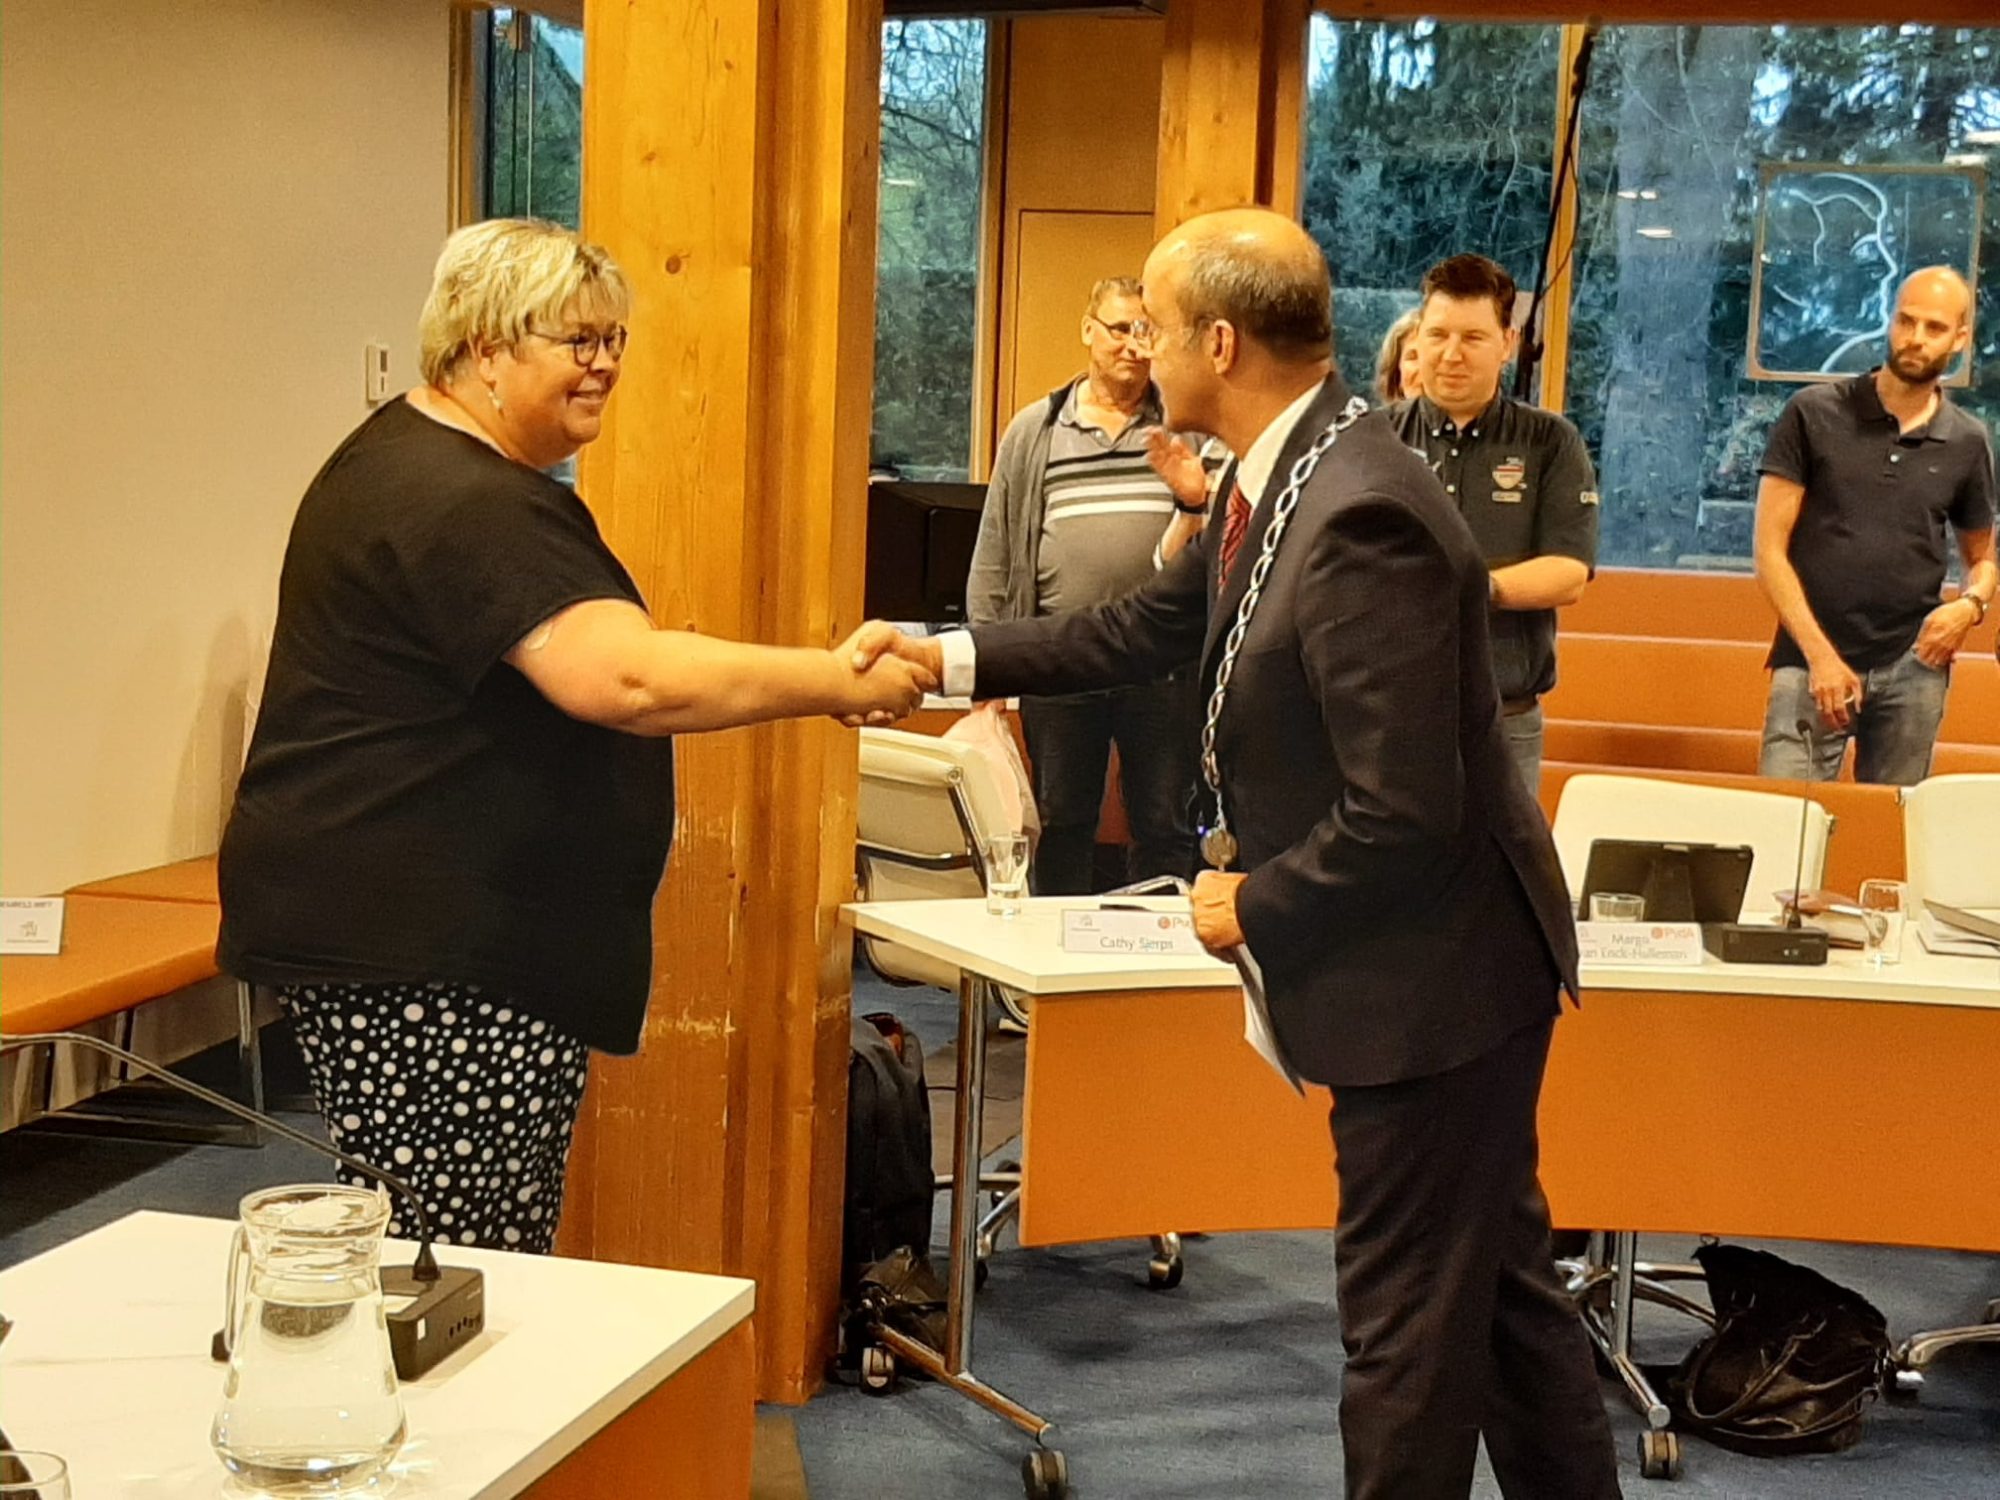 Burgemeester van Hedel feliciteert Maroesja Elshof.